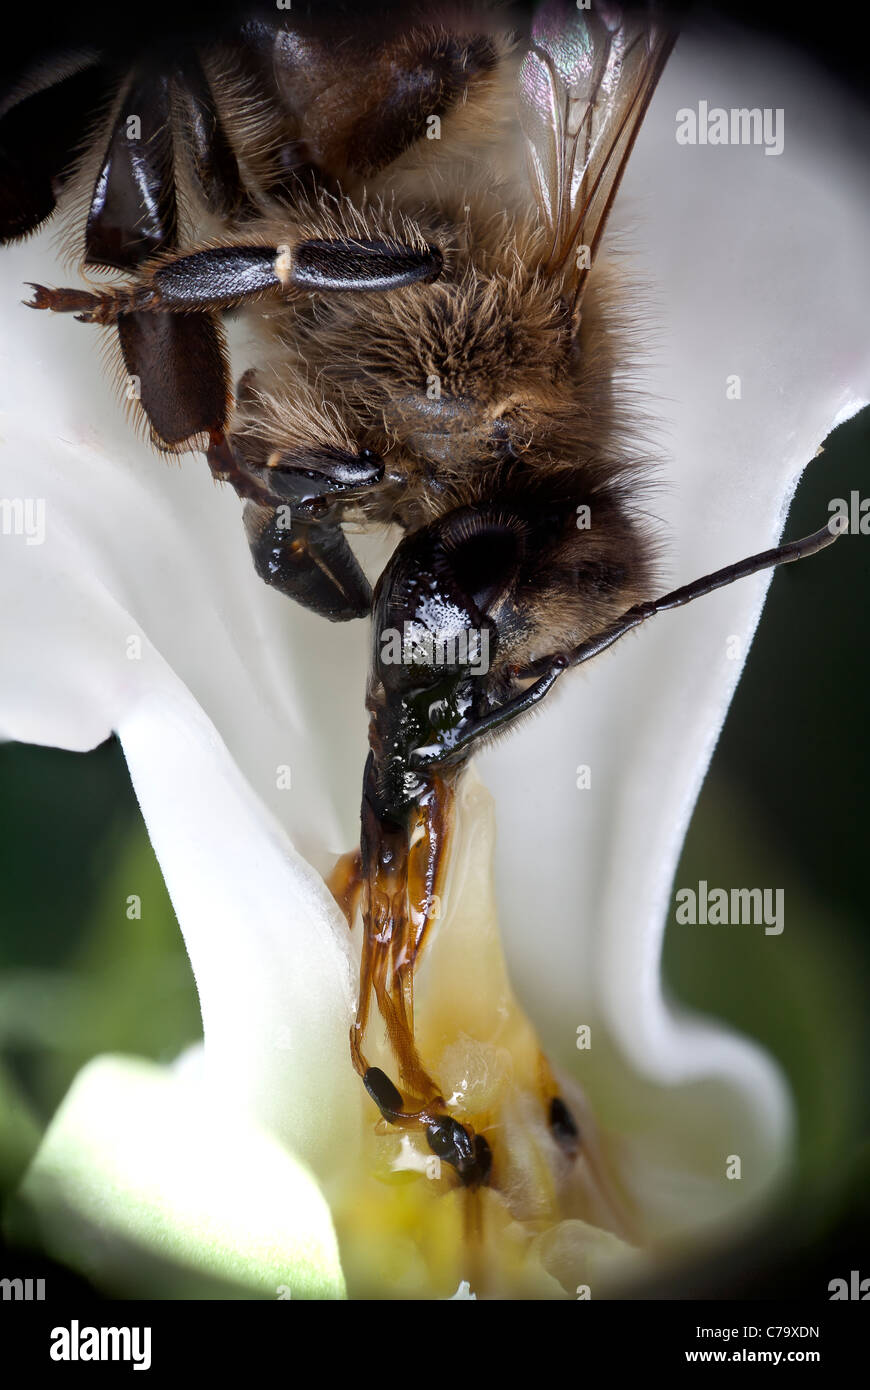 Una abeja (Apis mellifera) muertos de agotamiento tras ser atrapado por una cruel de la Flor de vid (Araujia sericifera). Foto de stock